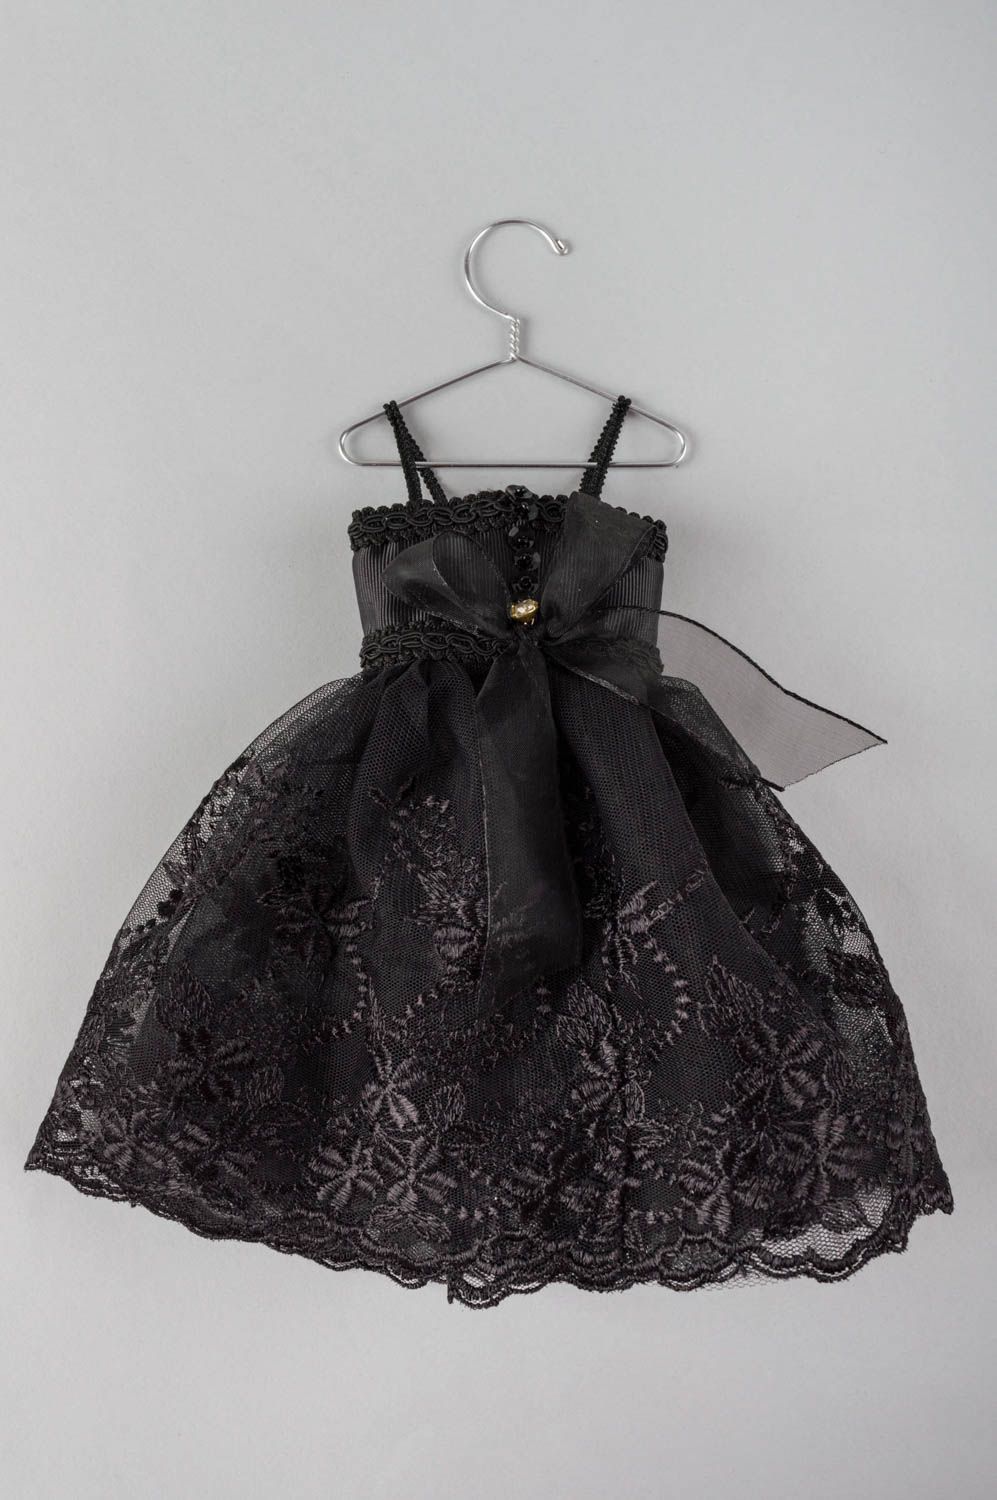 Интерьерная подвеска в виде платья ручной работы оригинальная из кружева фото 2